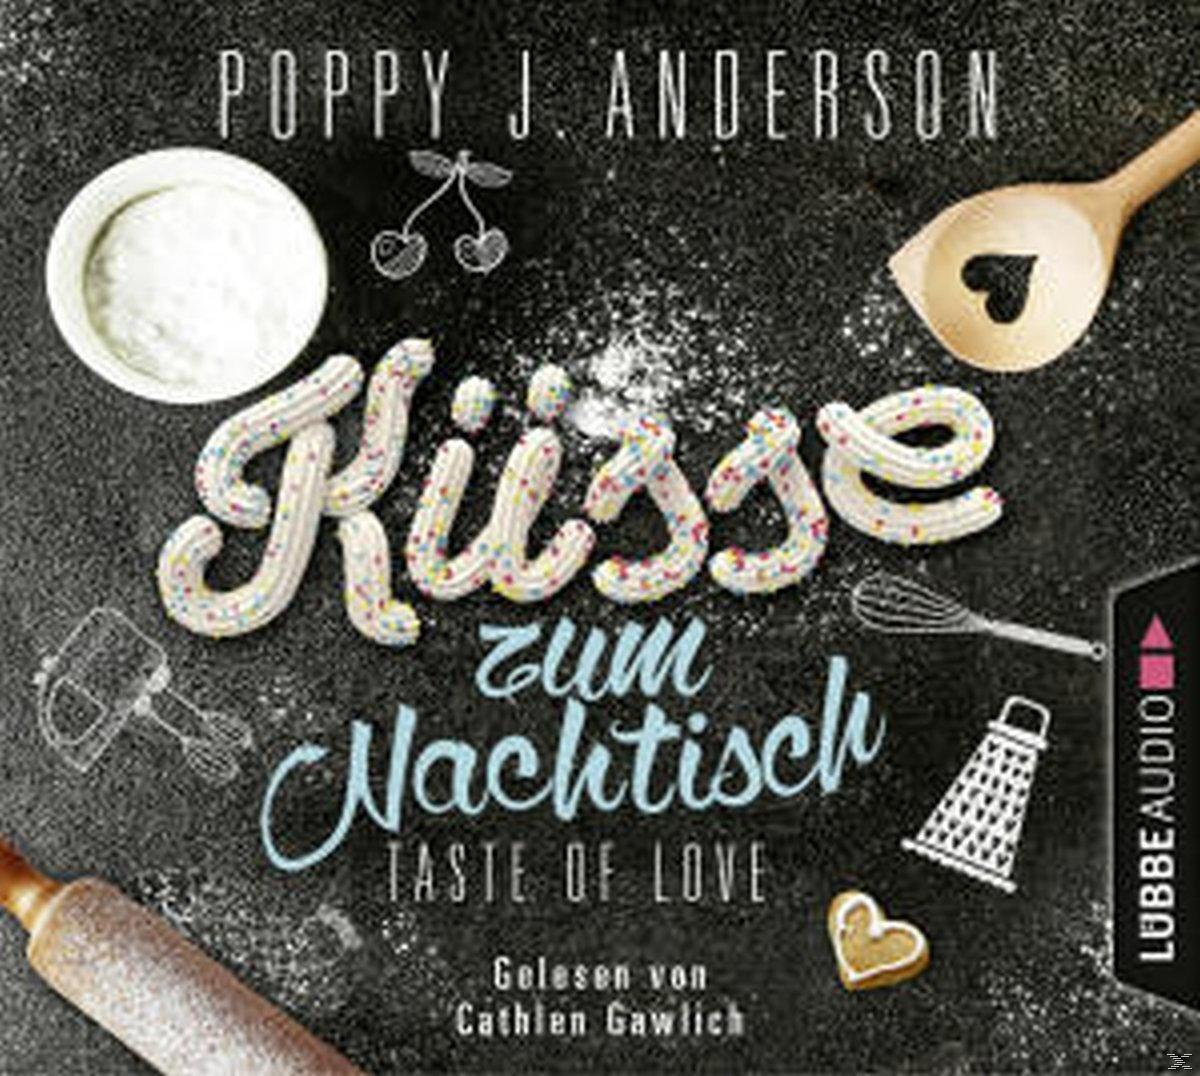 Poppy Anderson - Taste zum (CD) - Love-Küsse of Nachtisch